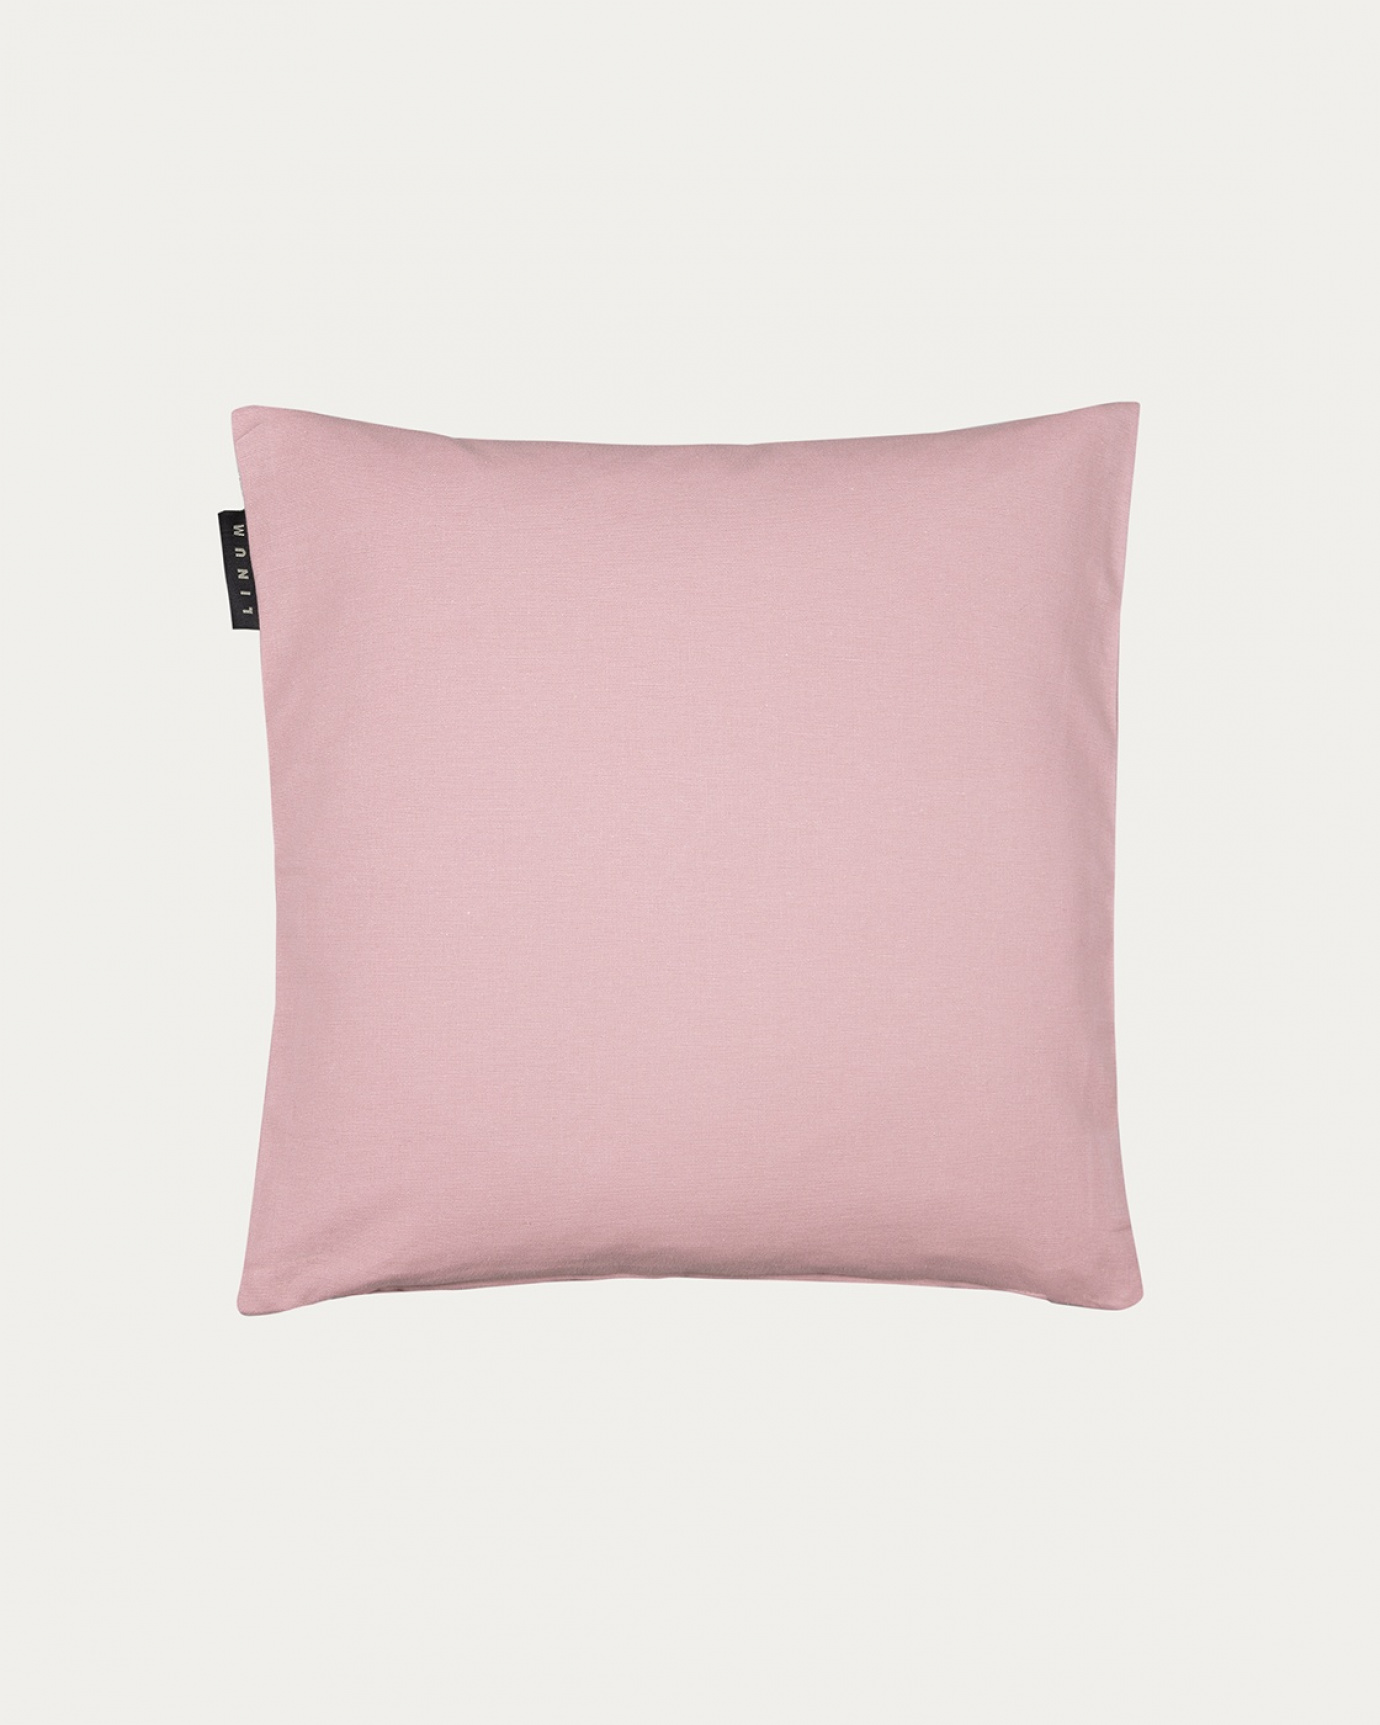 Immagine prodotto rosa antico ANNABELL copricuscini in morbido cotone di LINUM DESIGN. Dimensioni 40x40 cm.